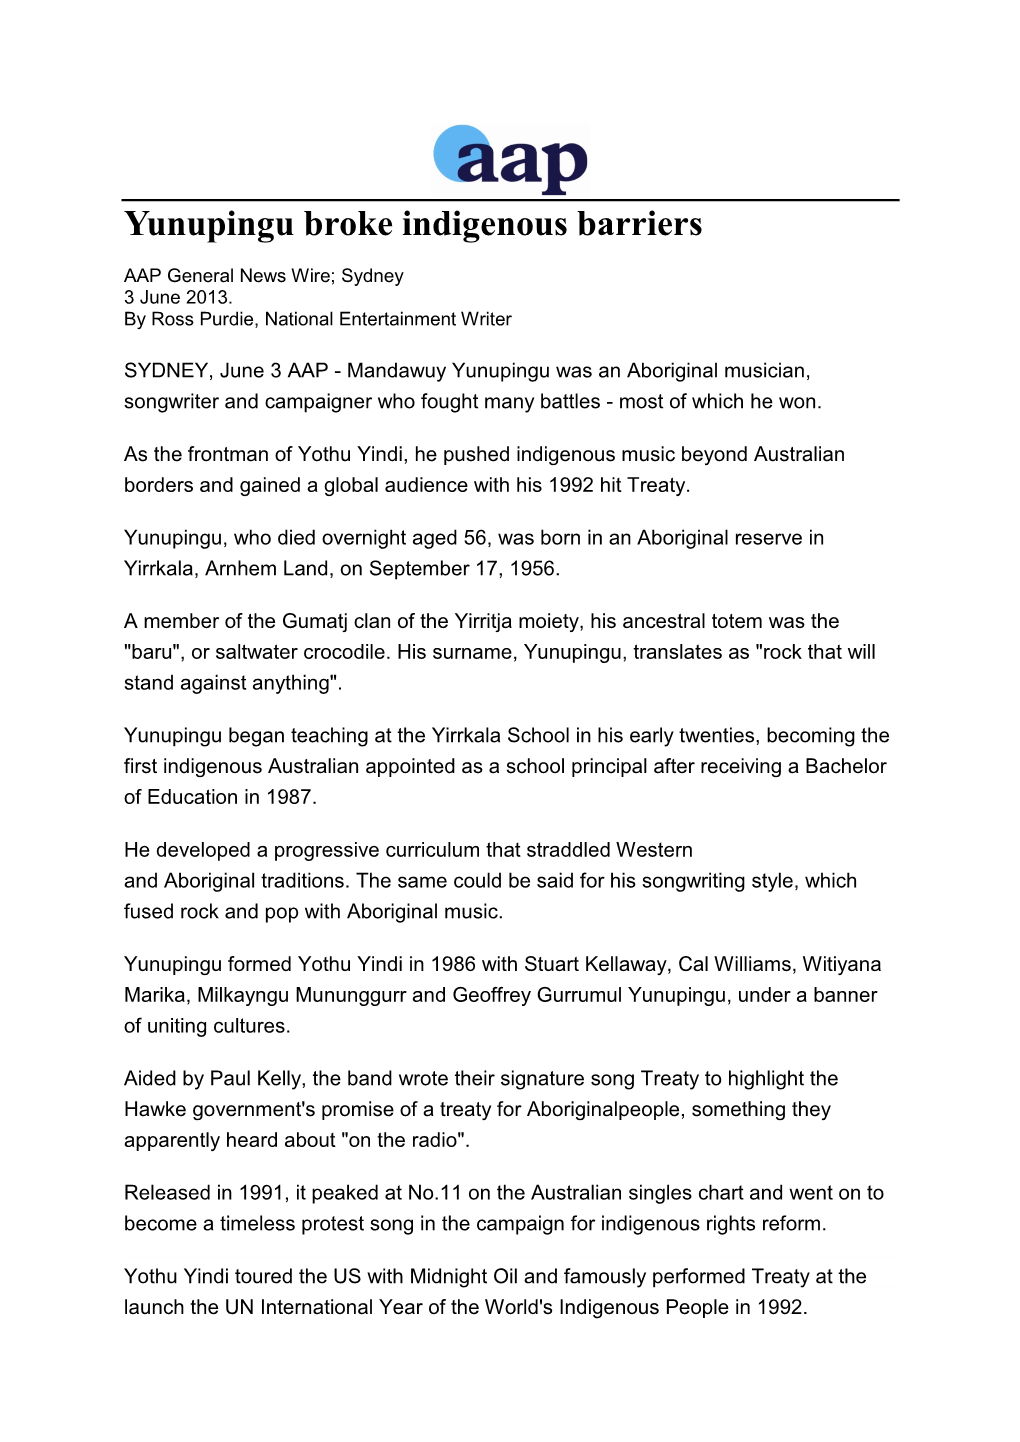 Yunupingu Broke Indigenous Barriers